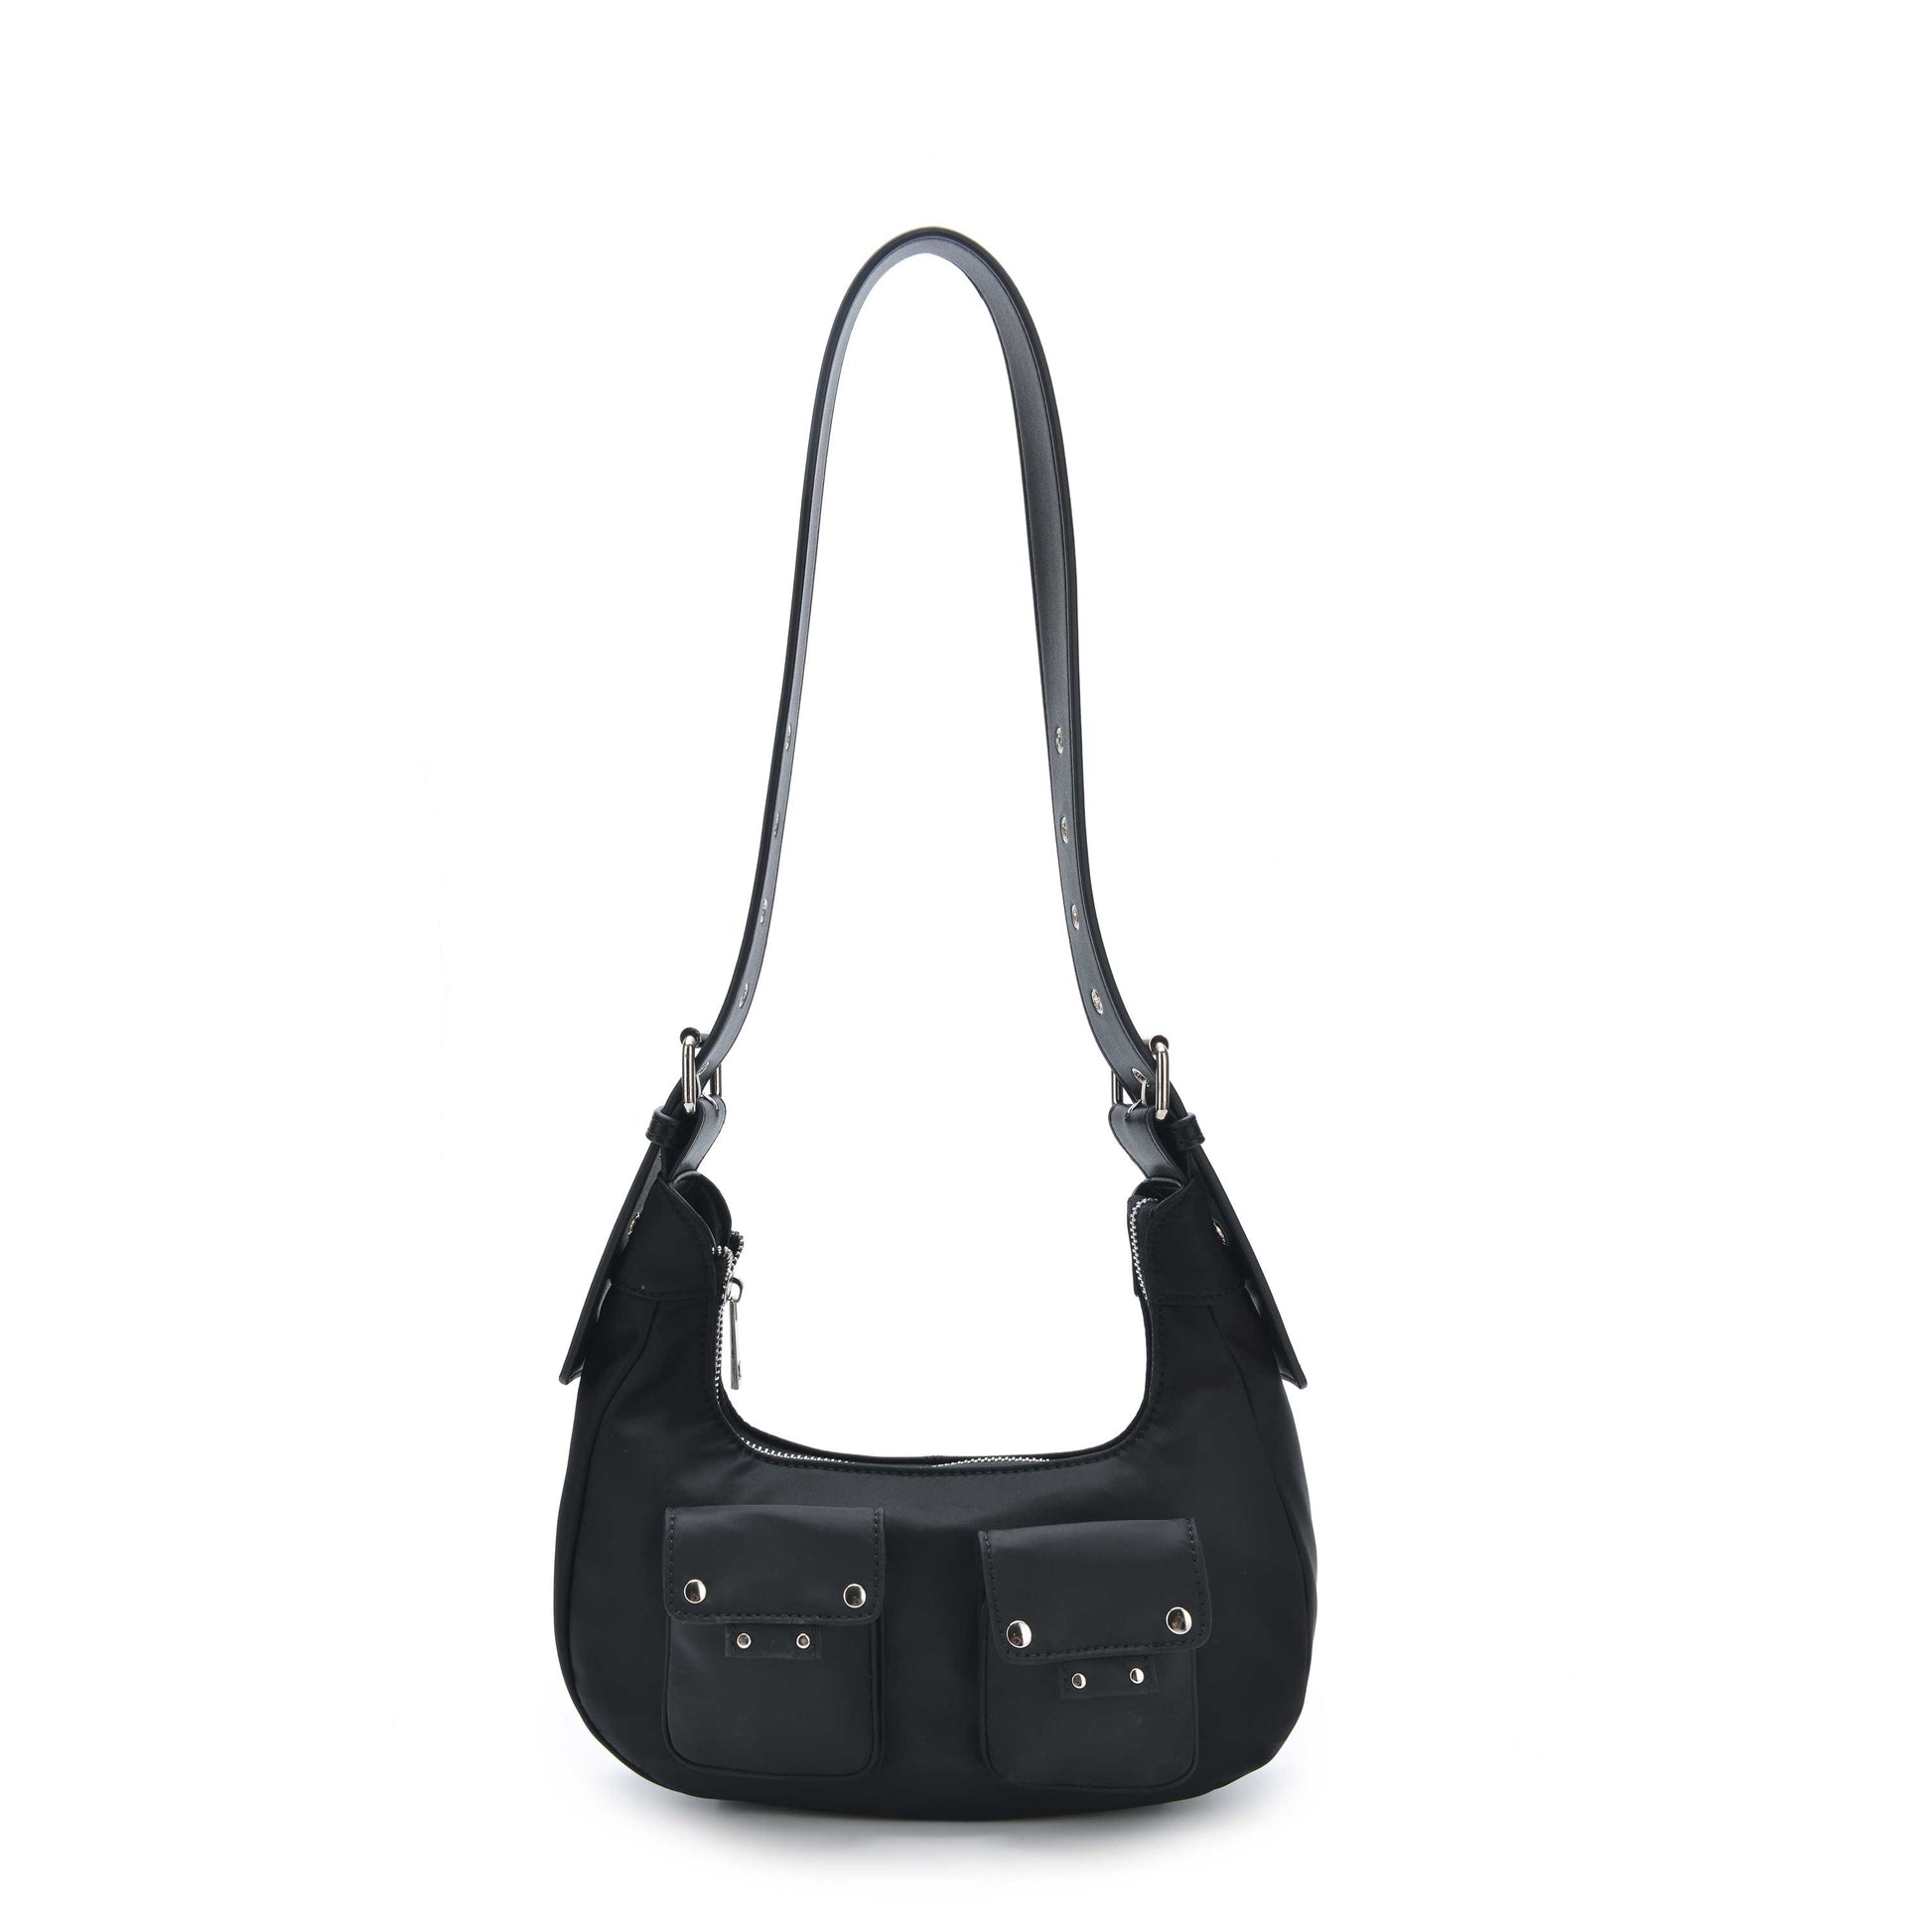 Longchamp Hobo Bag Gold Patent Leather Handbag Women's -  Sweden